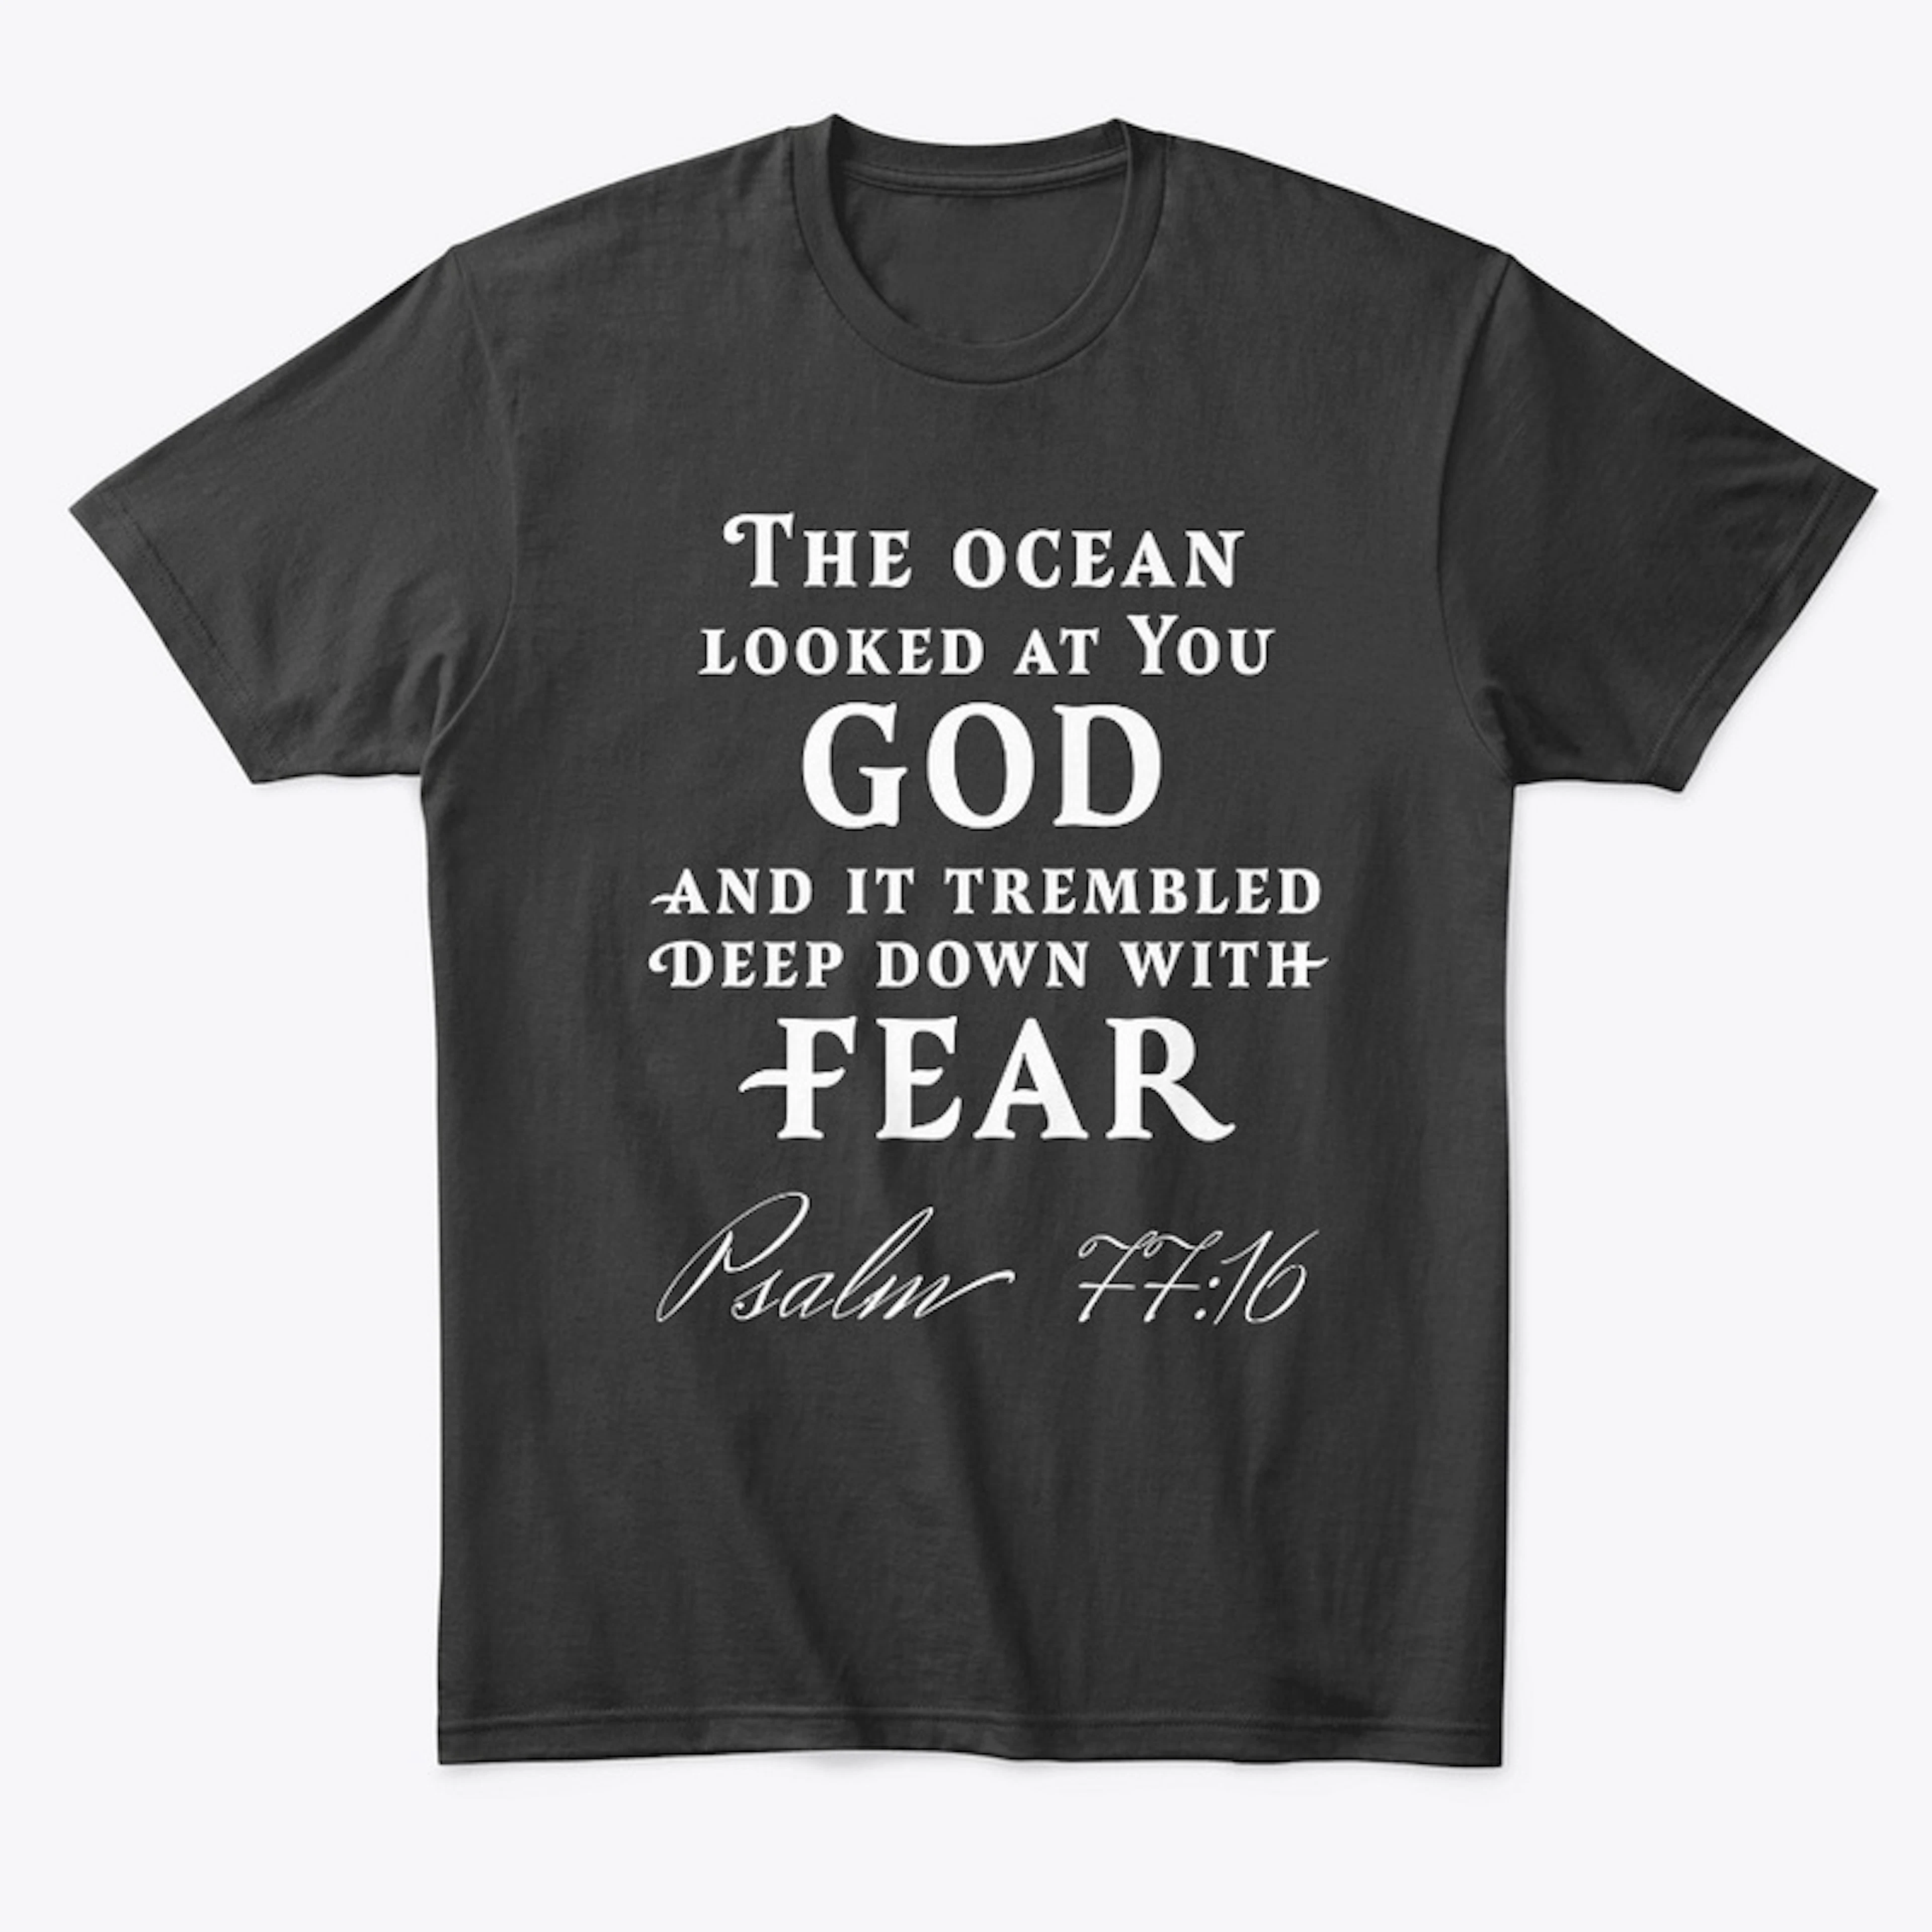 Psalm 77:16 T-shirt